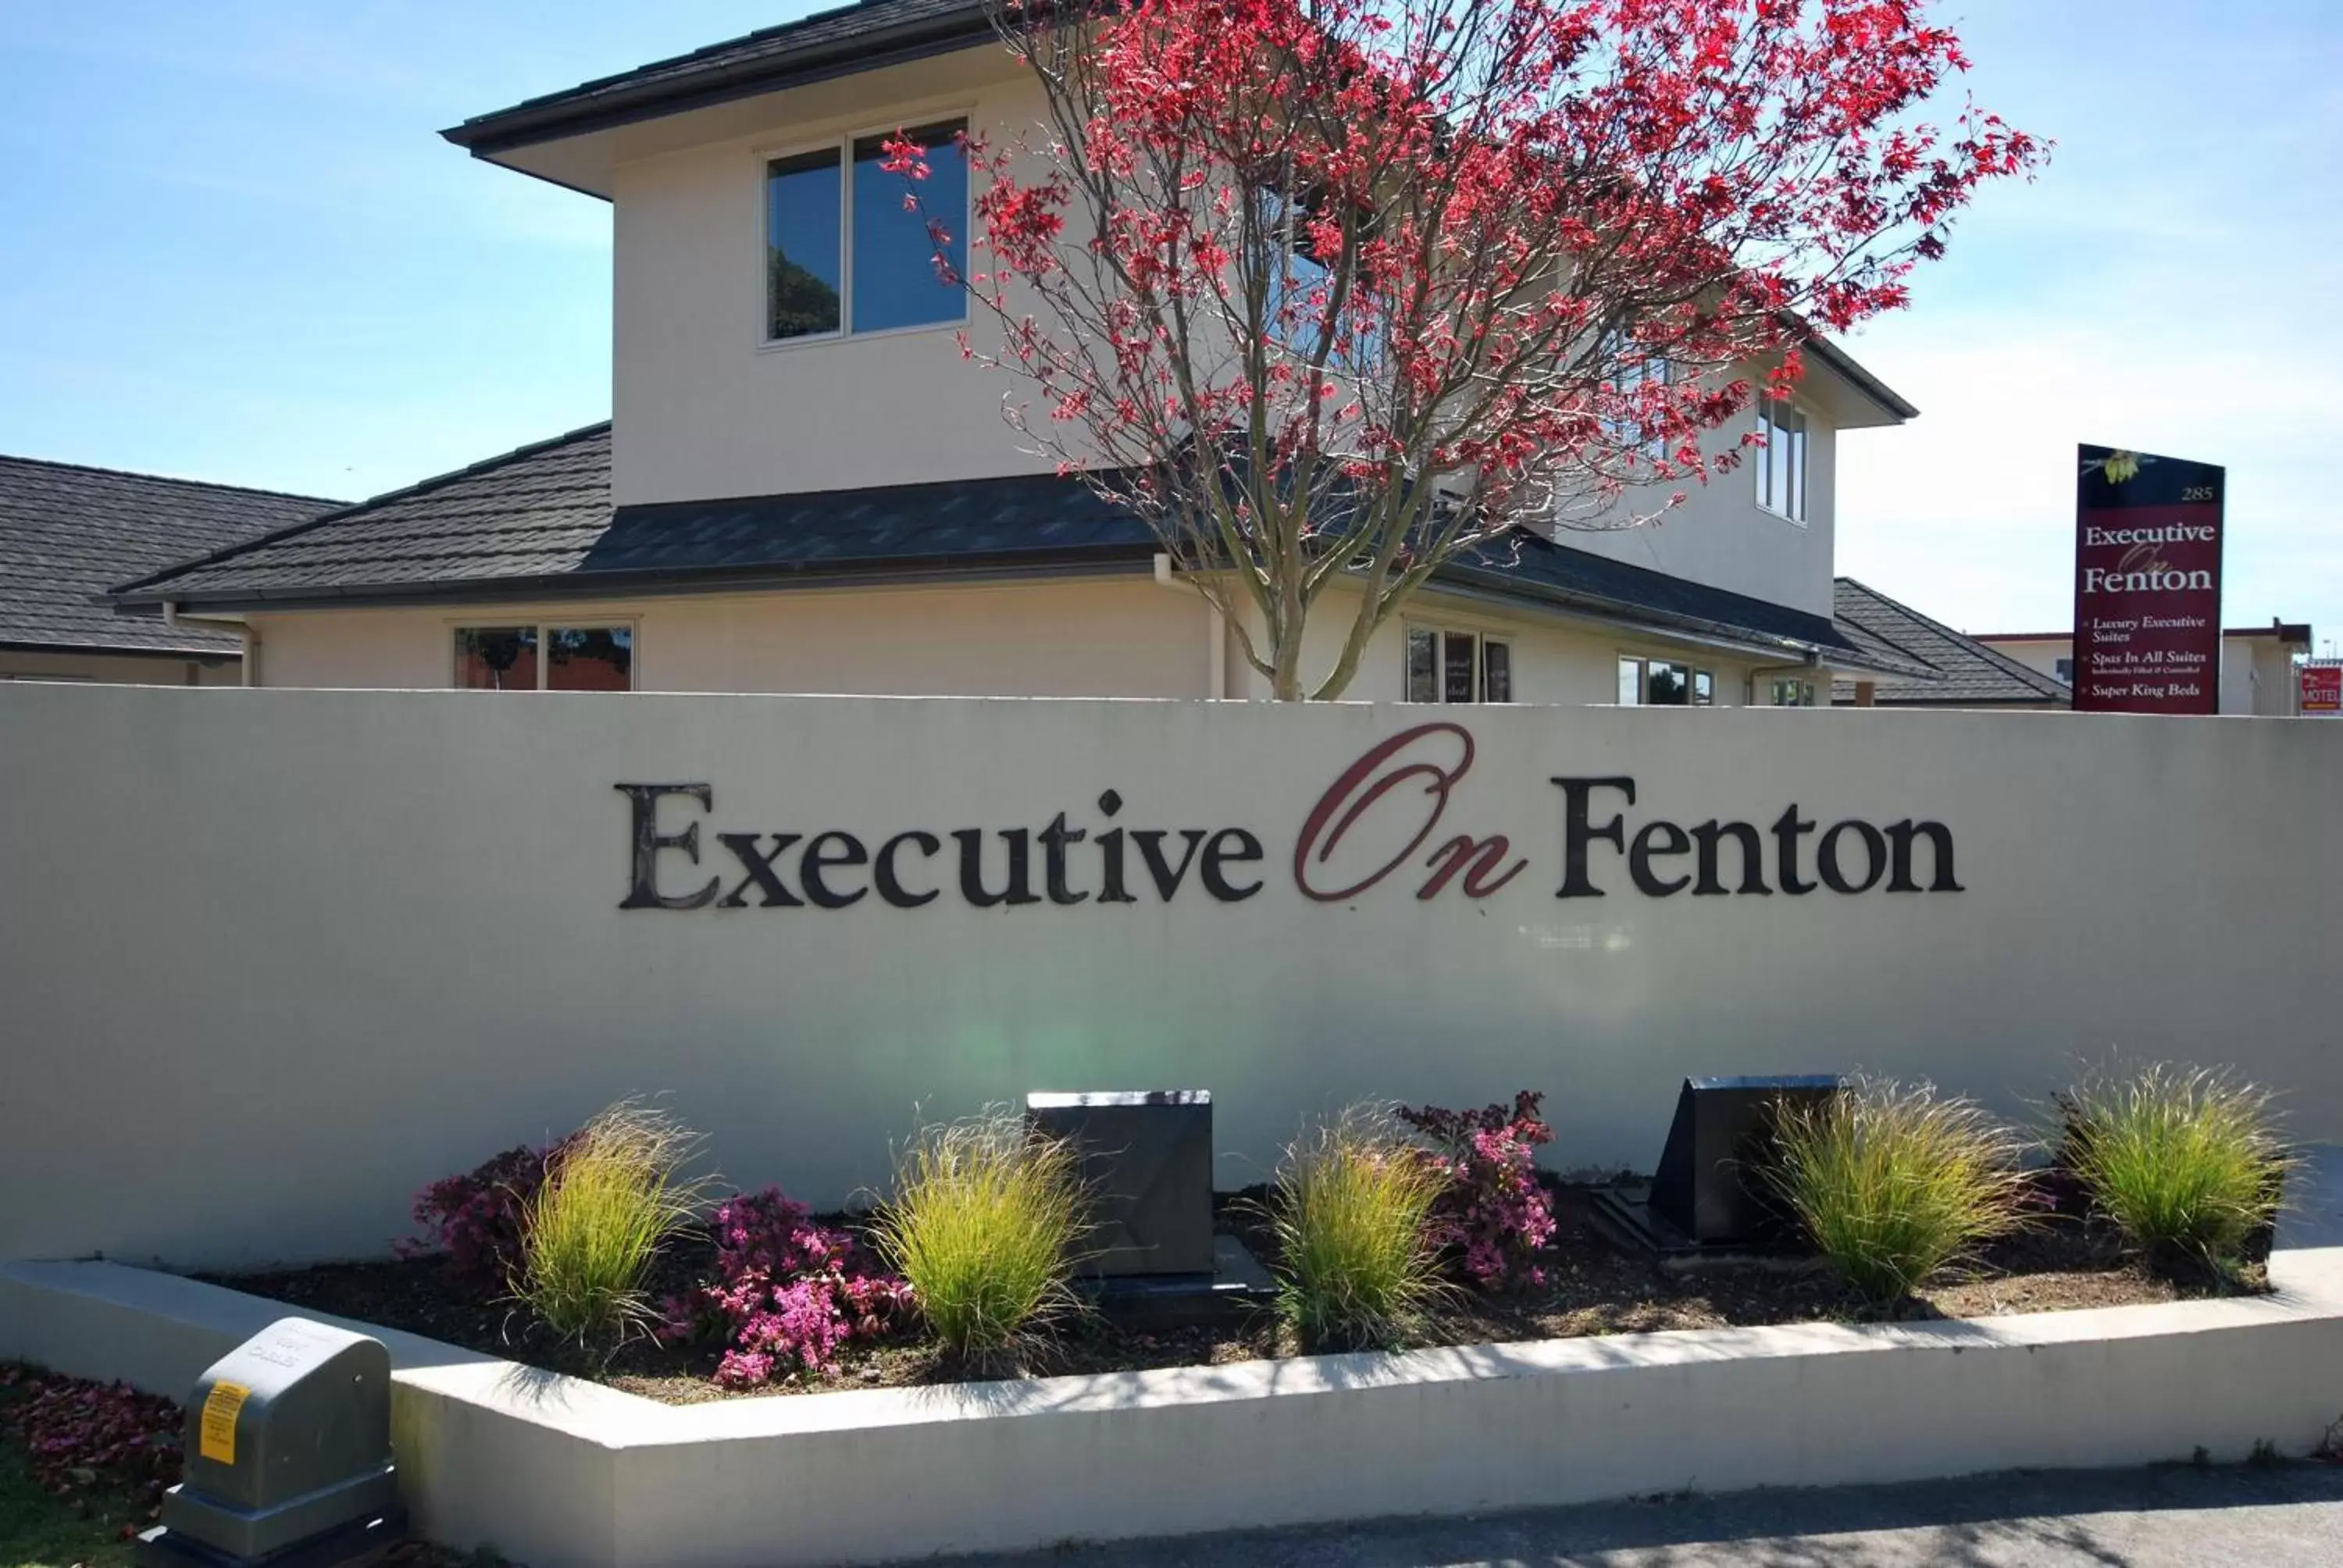 Facade/entrance, Property Building in Executive On Fenton